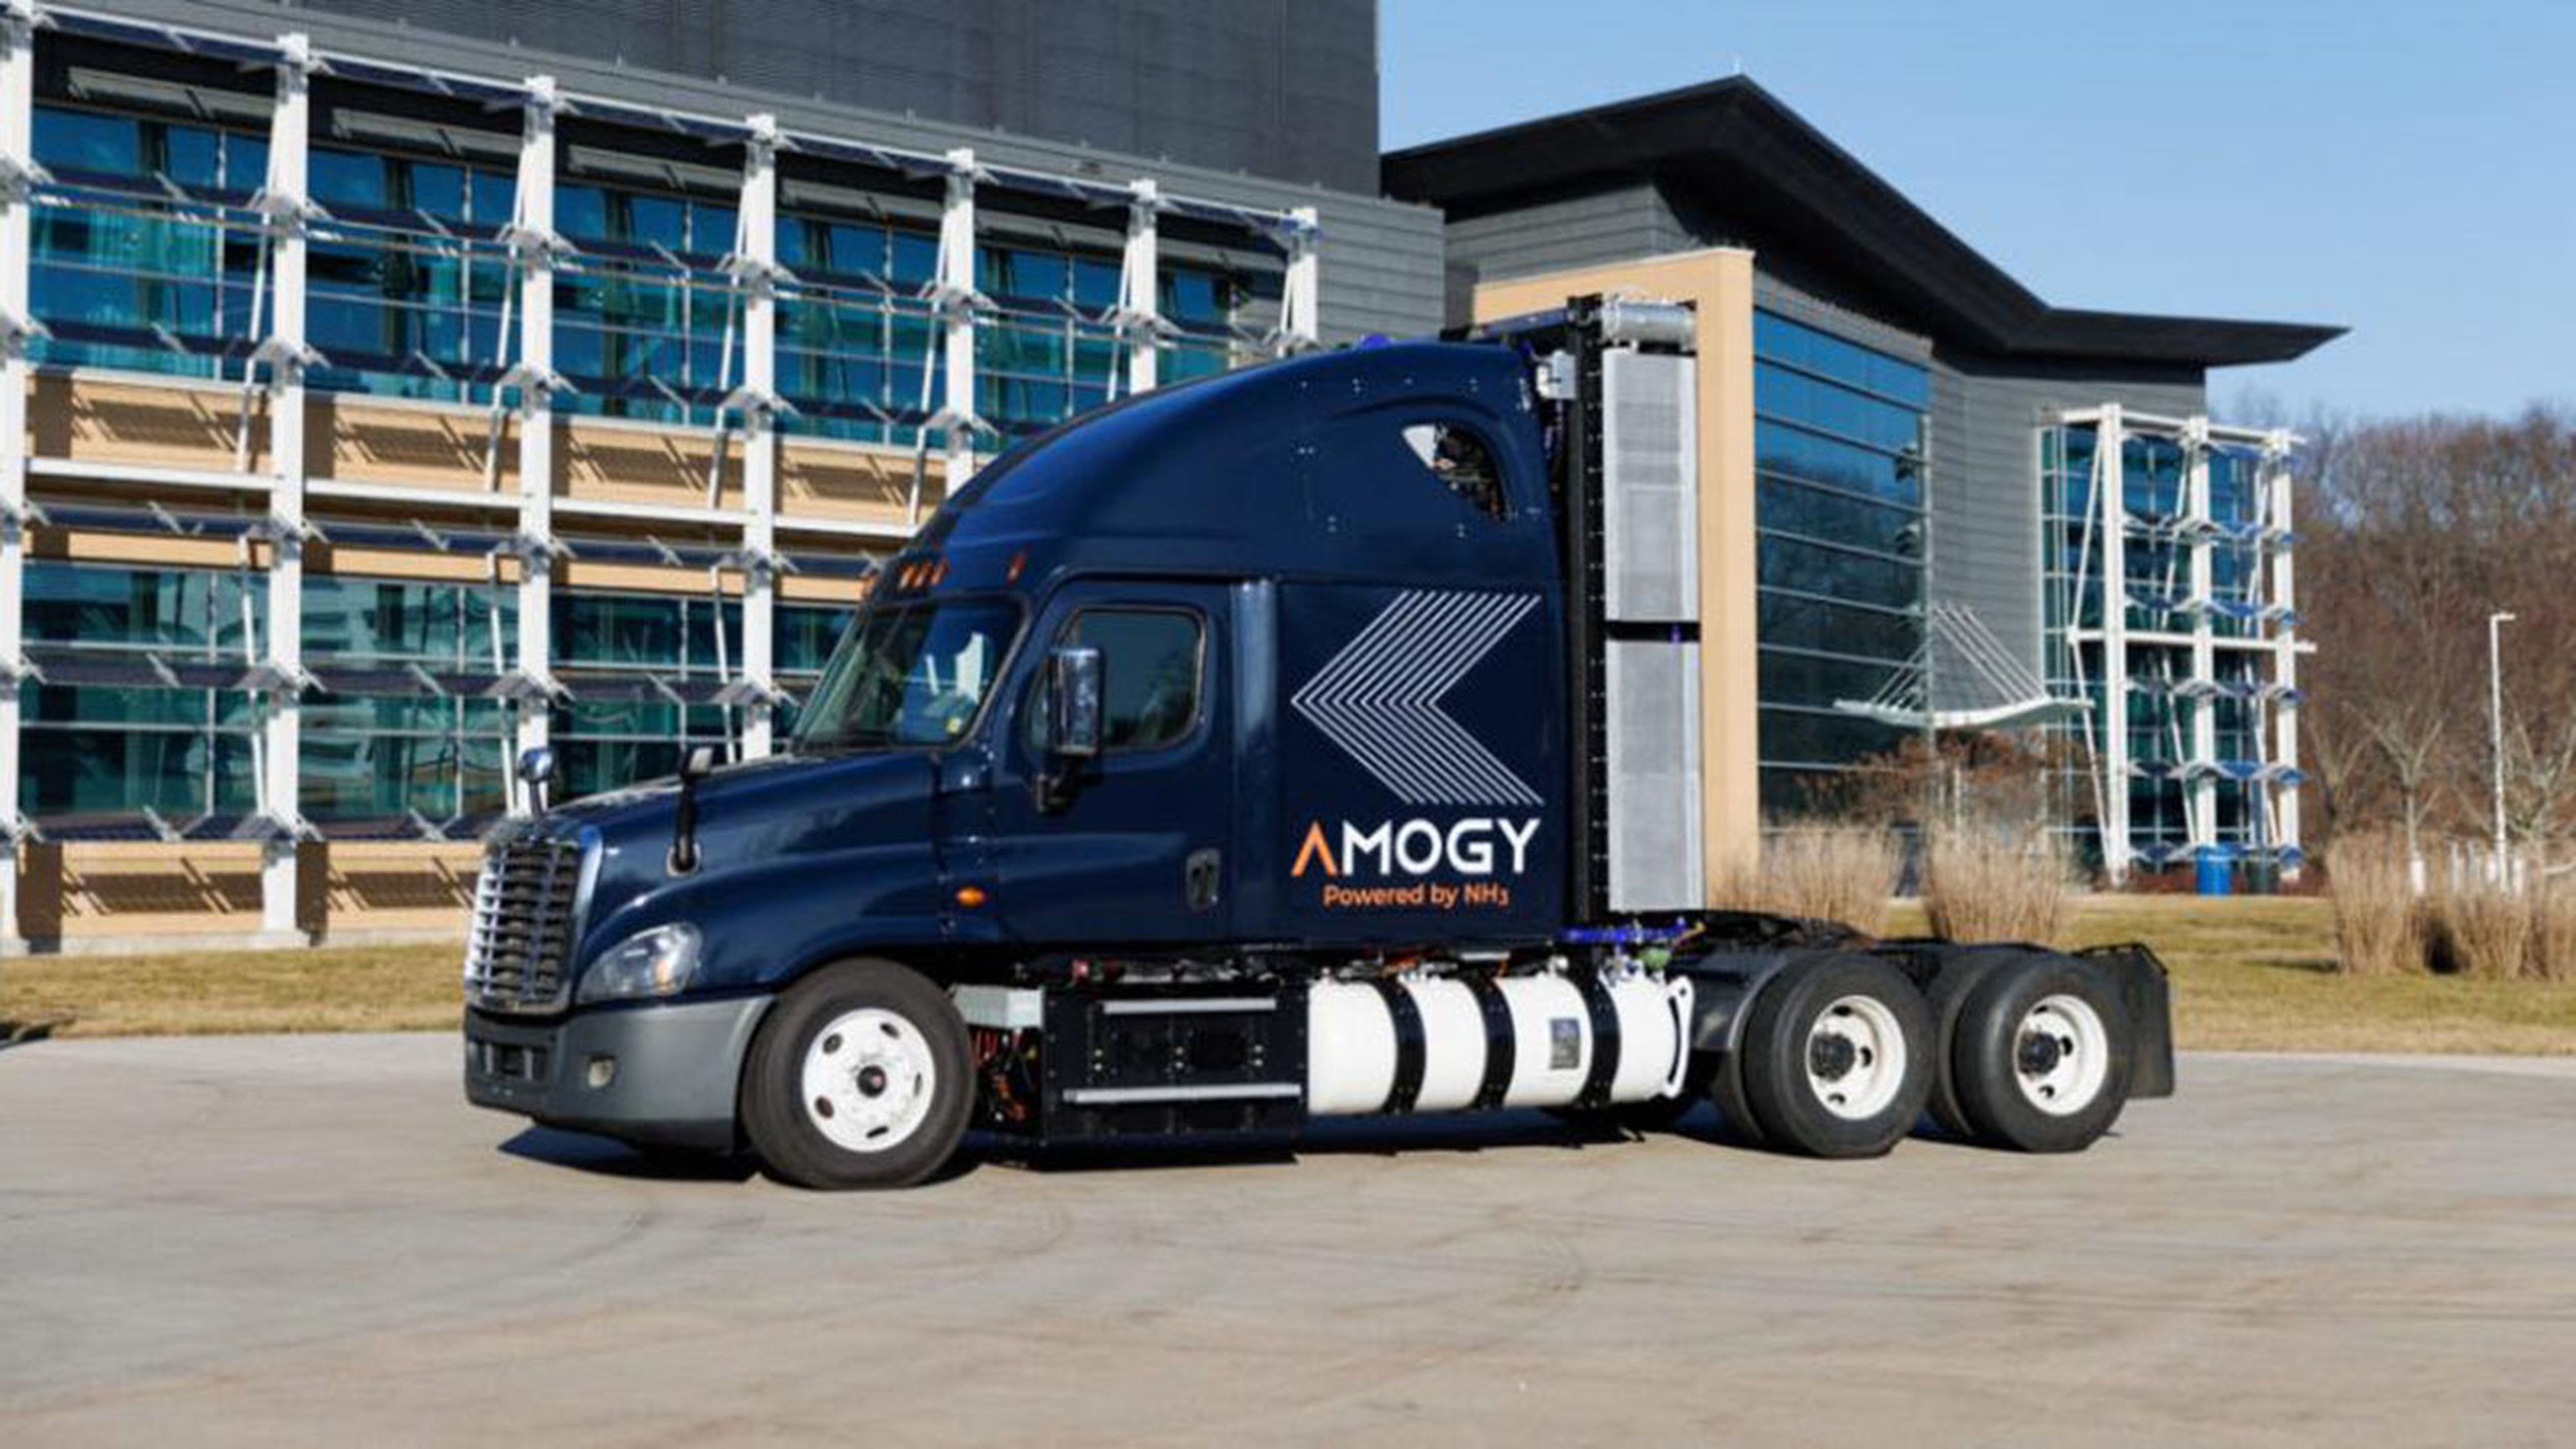 Amogy probó su nuevo combustible de amoniaco en esta cabeza de camión (Amogy Inc.).